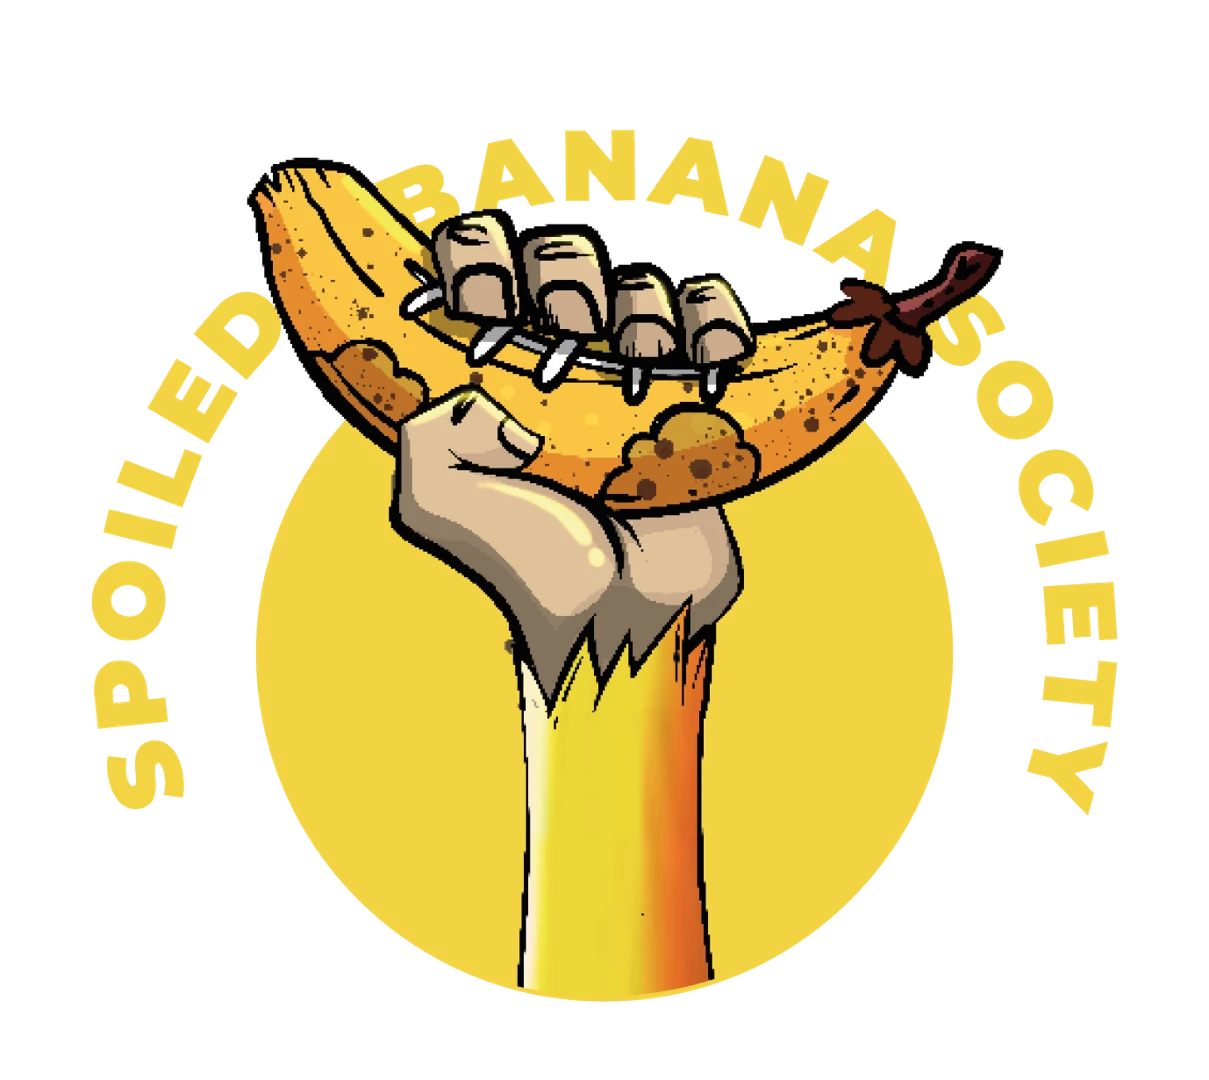 Spoiled Banana Society